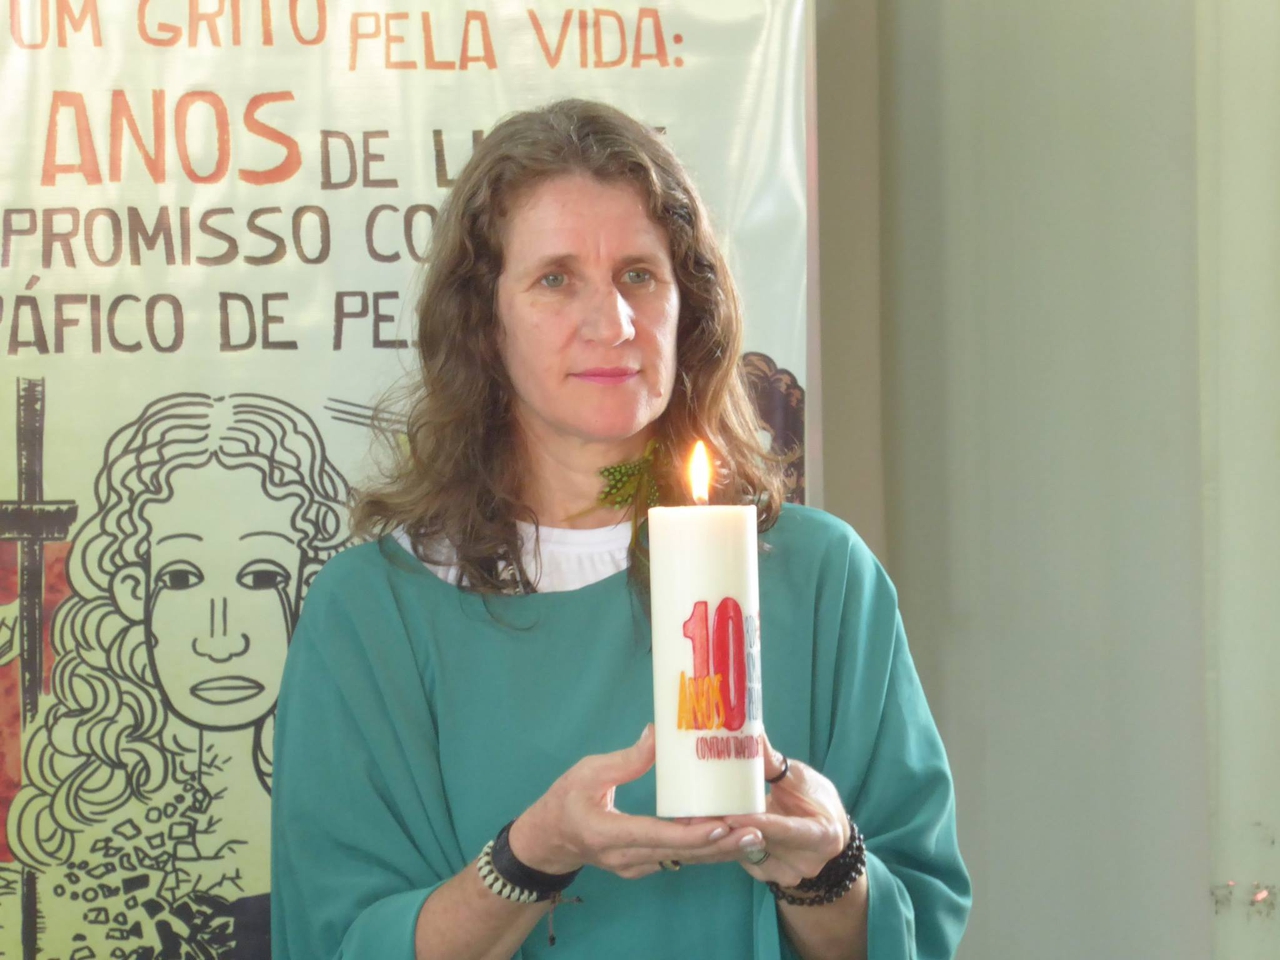 Testemunho da Ir. Roselei Bertoldo, membro da rede Talitha Kum Um grito pela vida Brasil